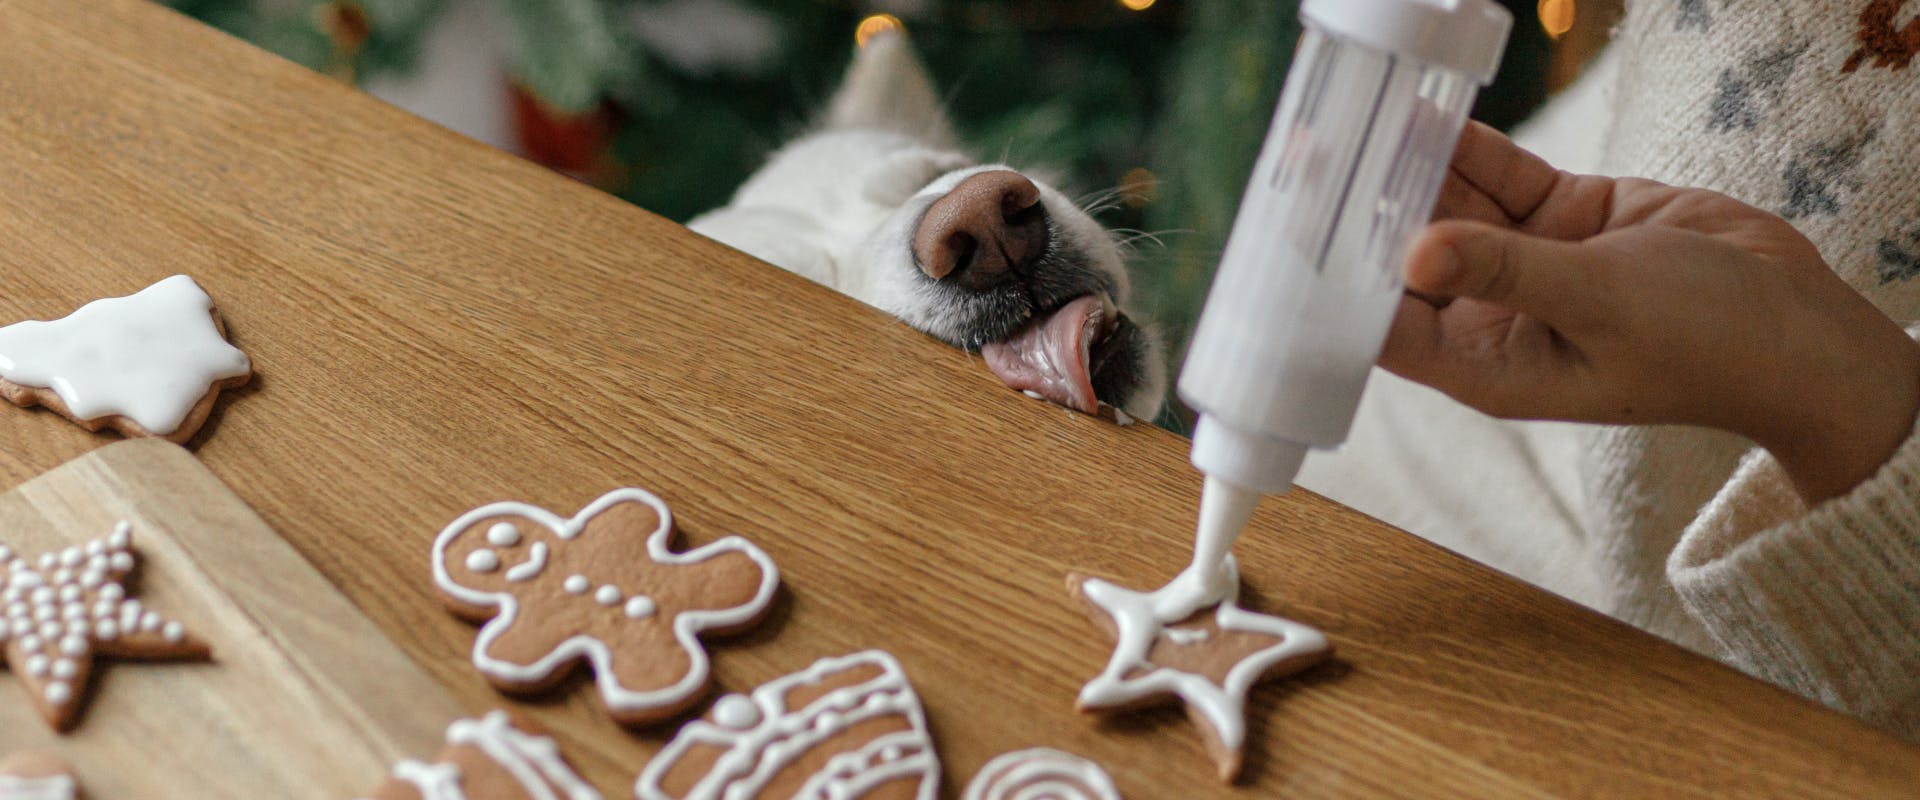 Homemade dog Christmas cookies.